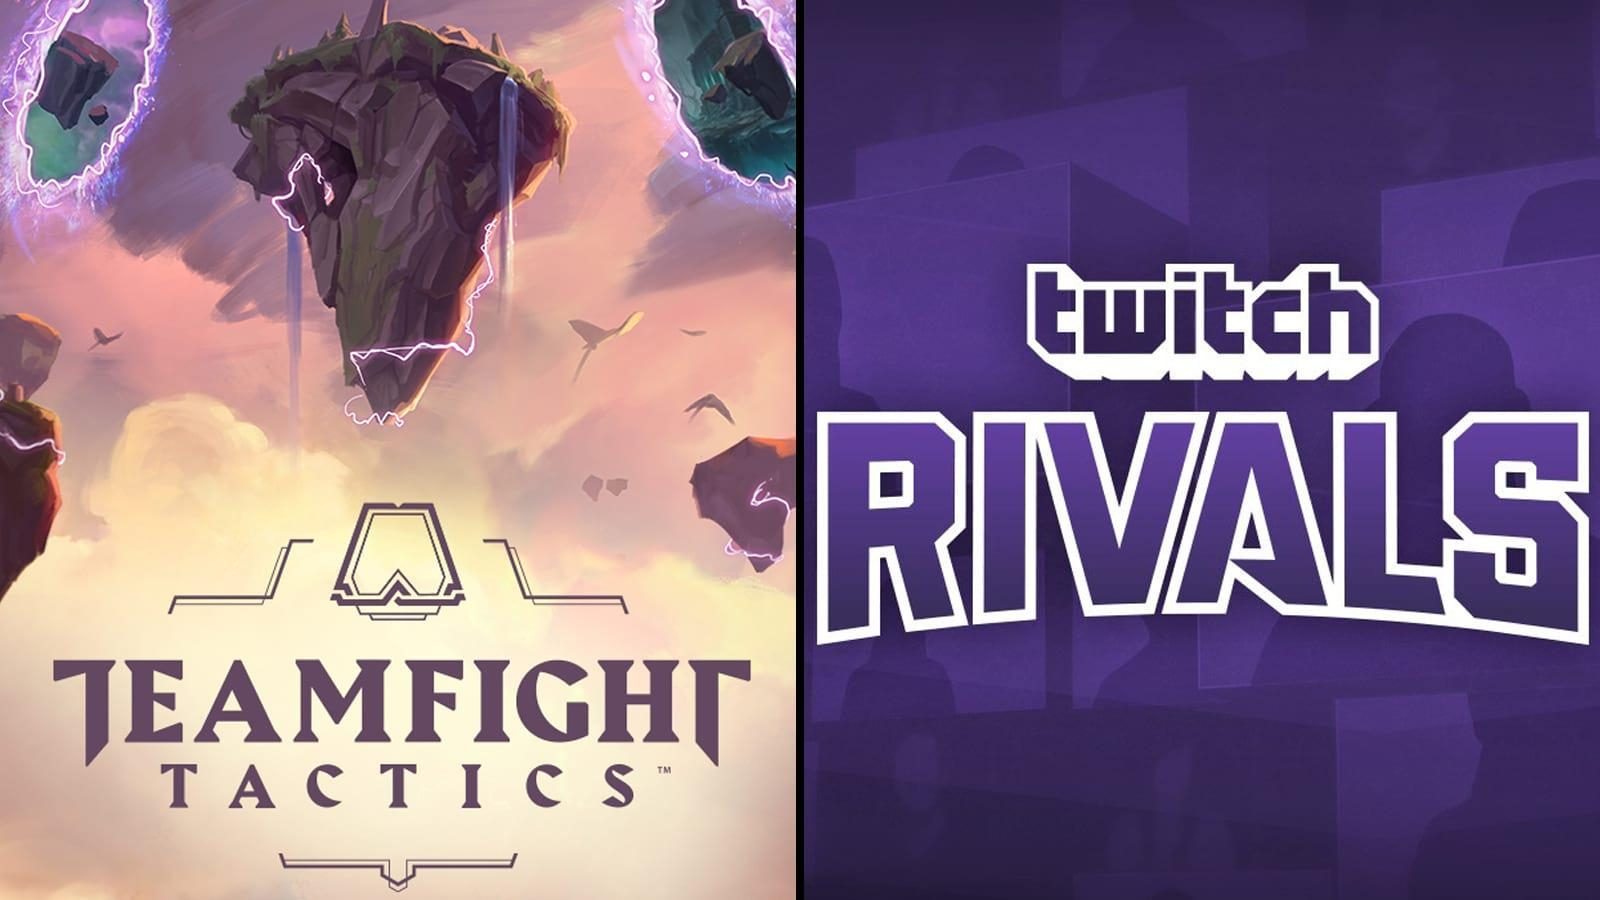 Káº¿t quáº£ hÃ¬nh áº£nh cho Twitch Rivals Hosts First Official Teamfight Tactics $125k Event